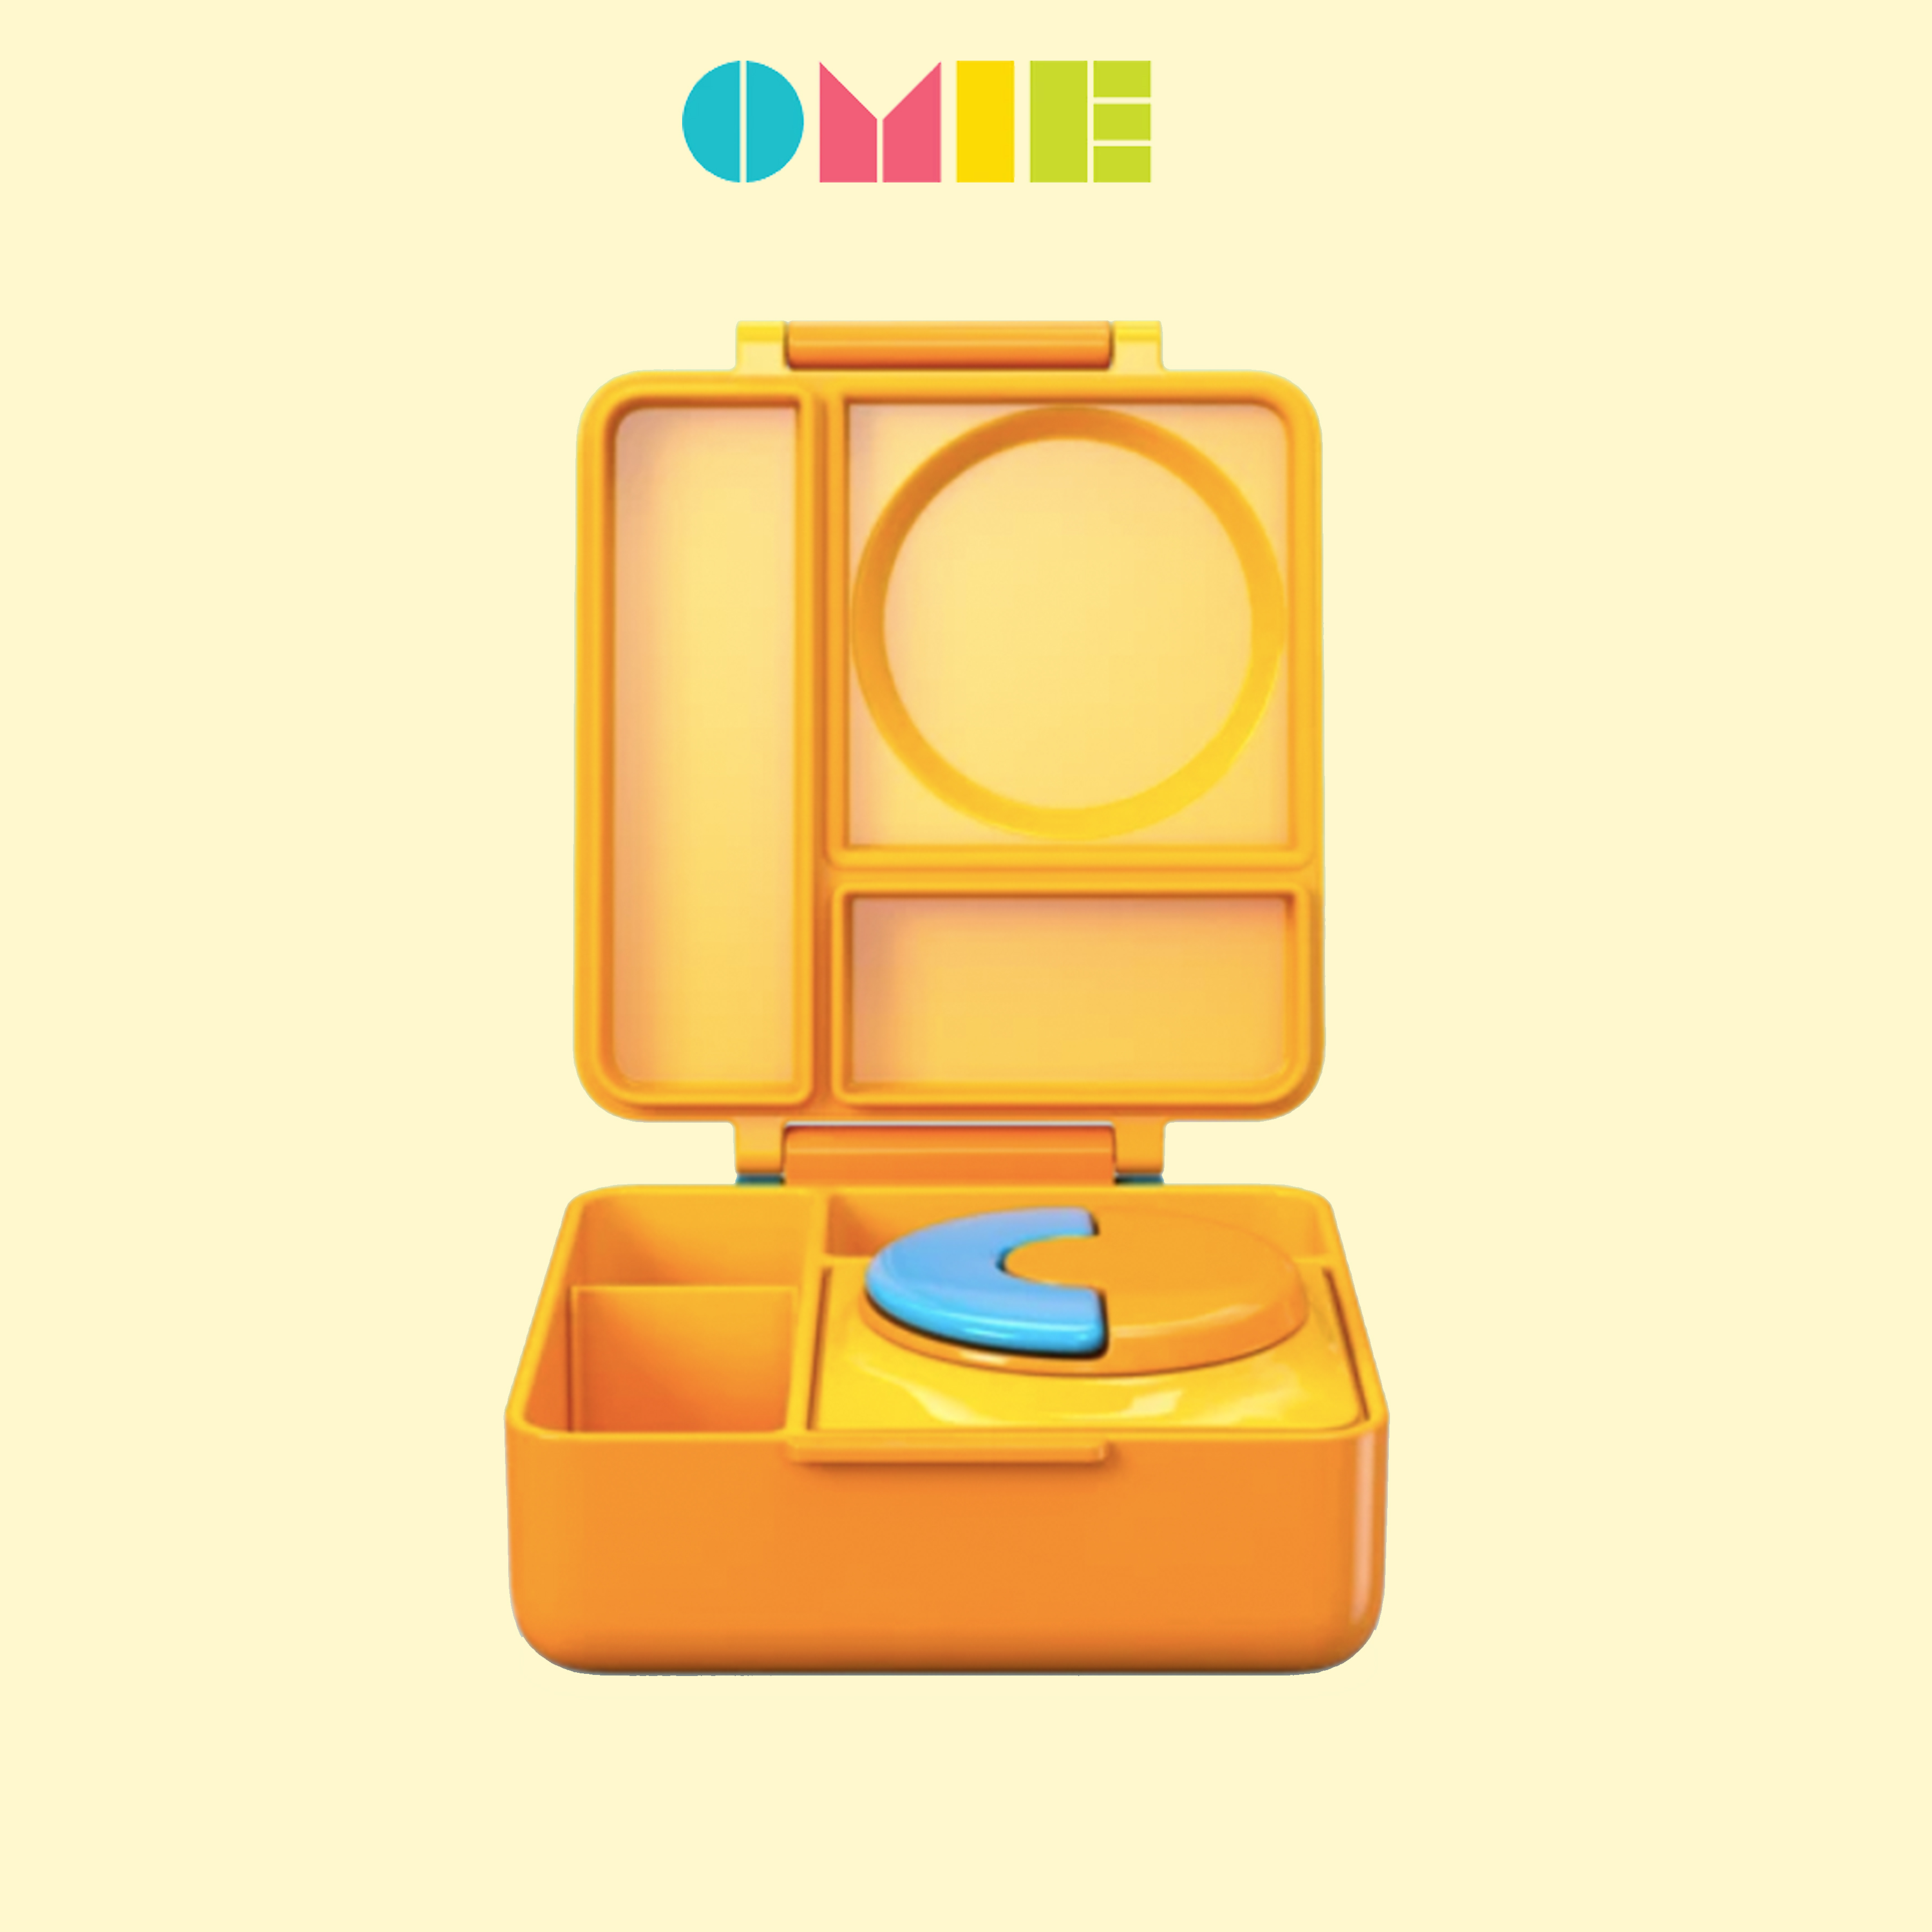 Omie Box กล่องข้าวเก็บอุณหภูมิร้อนและเย็น